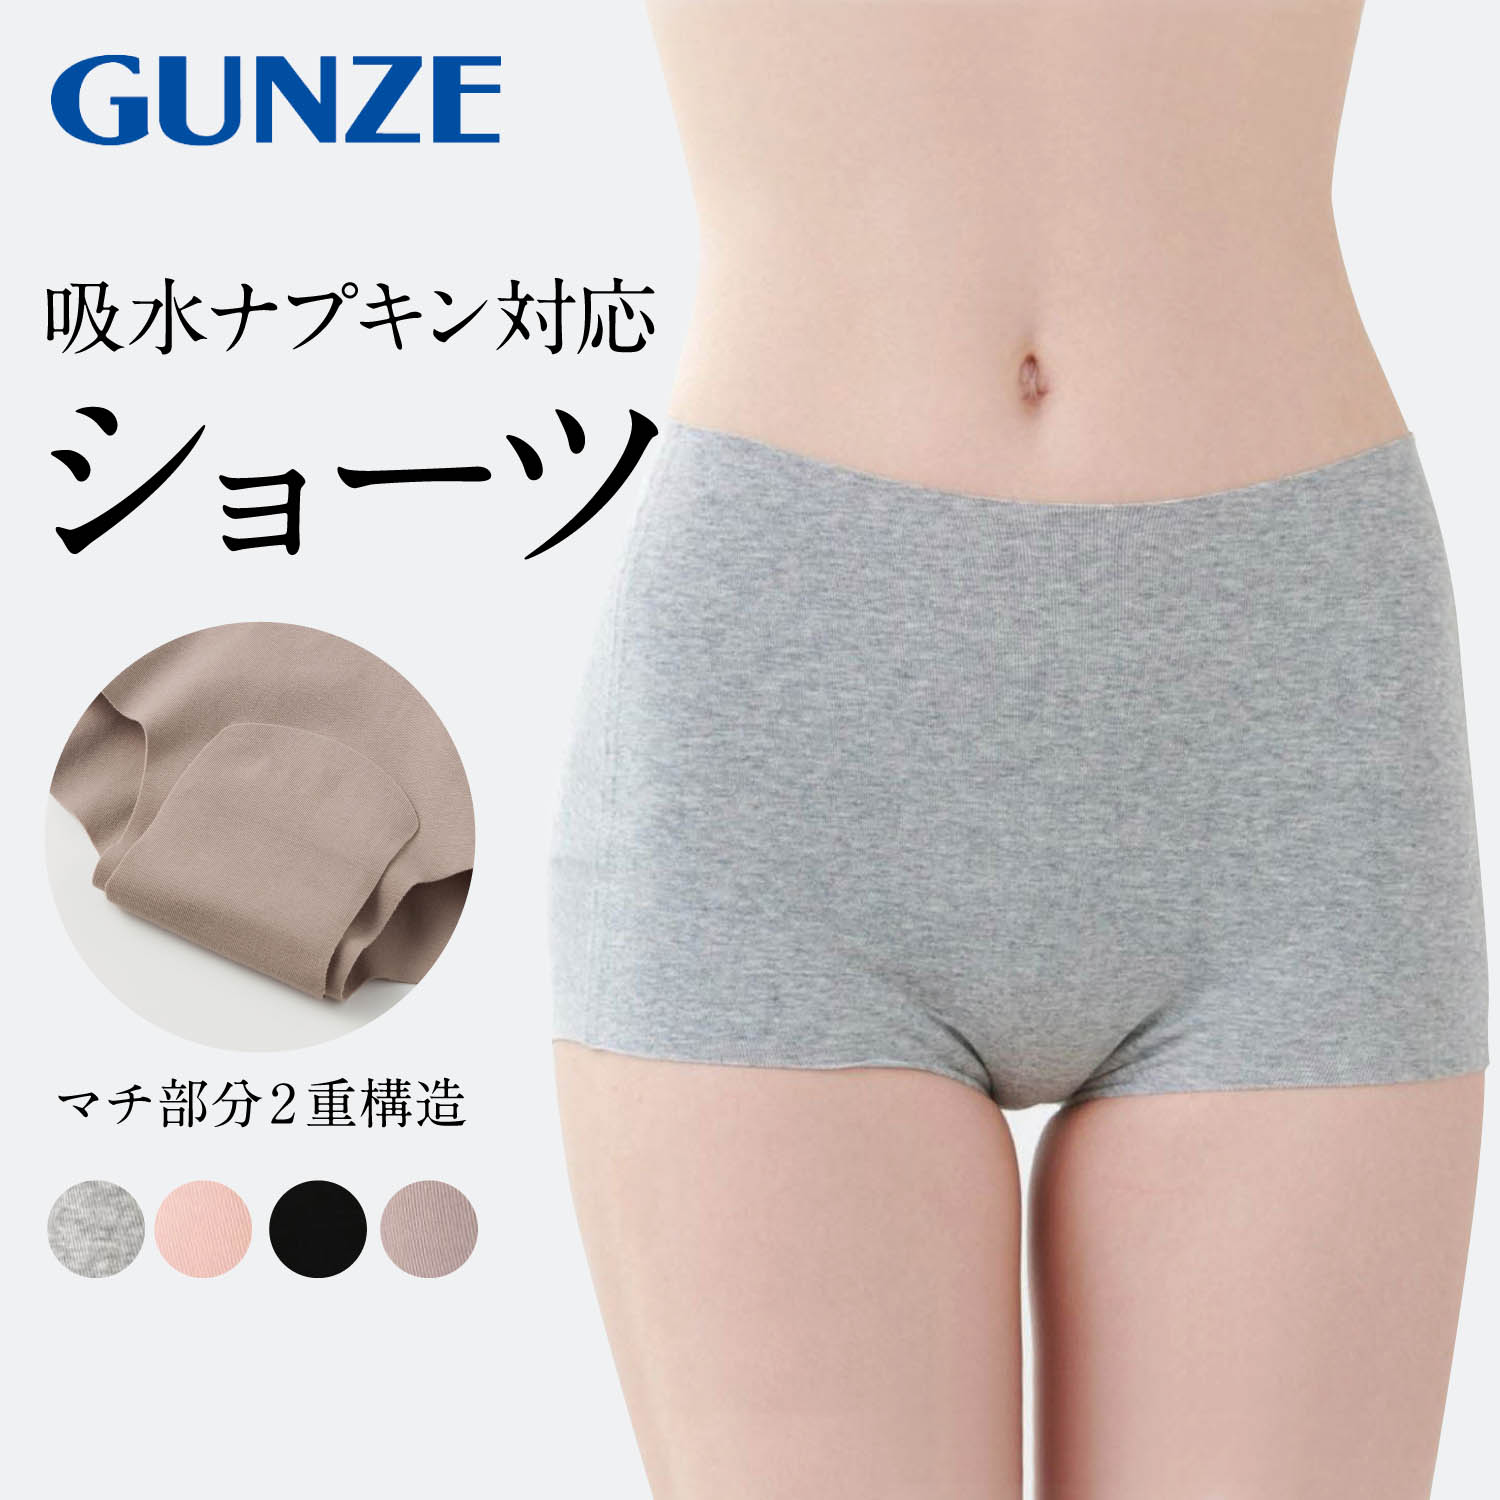 【グンゼ/GUNZE】セルフェア 吸水ナプキン対応レギュラーショーツ(1分丈)[日本製]画像